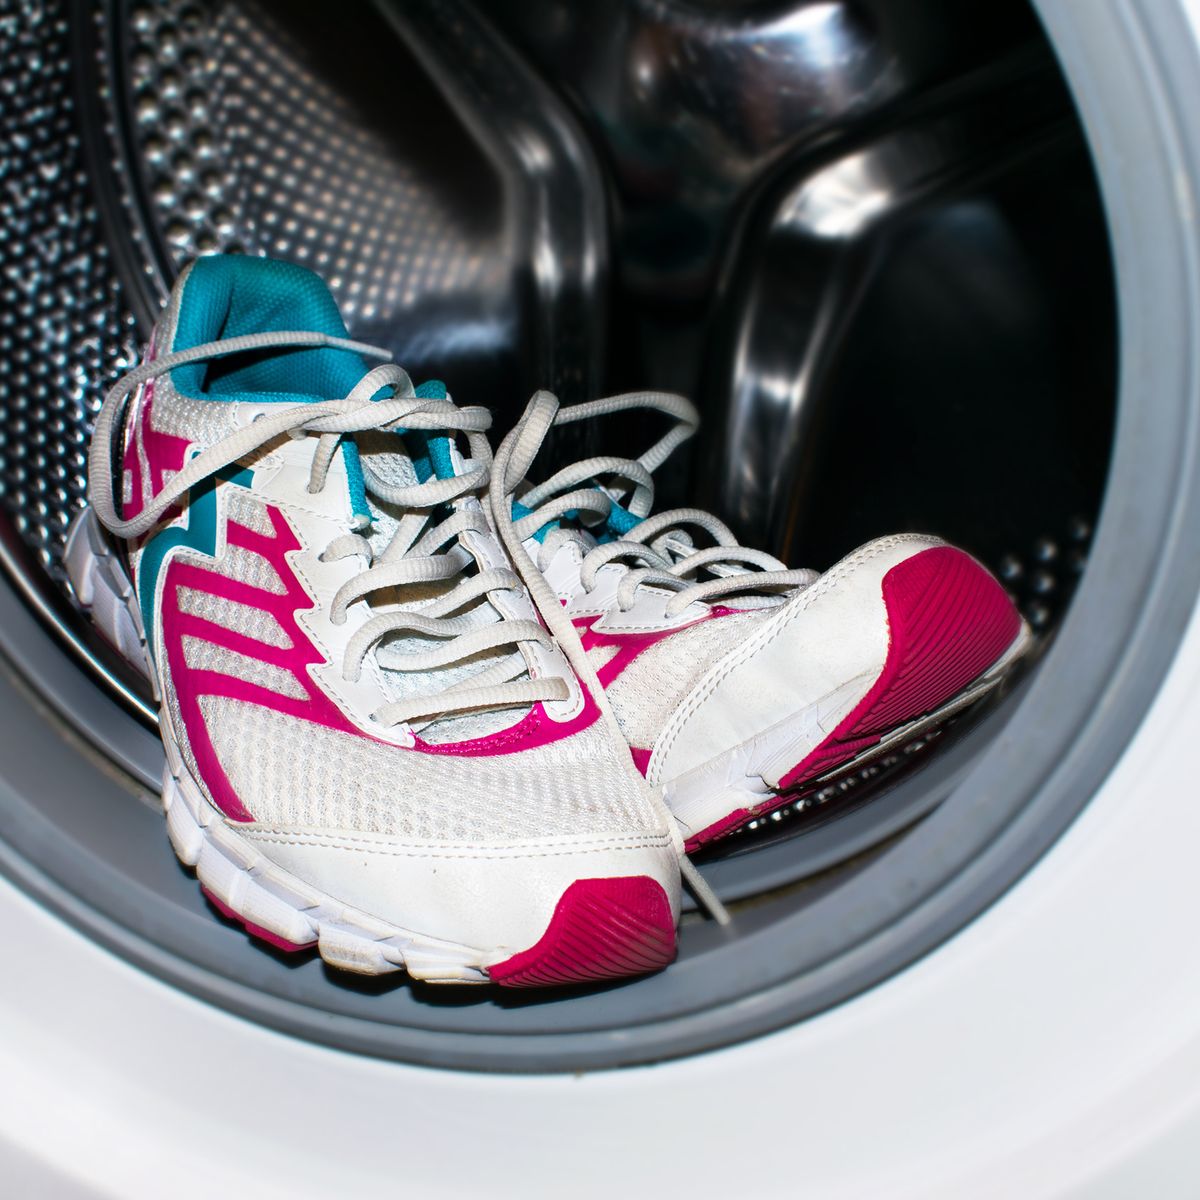 Trucos para lavar las zapatillas en la lavadora sin que se estropeen